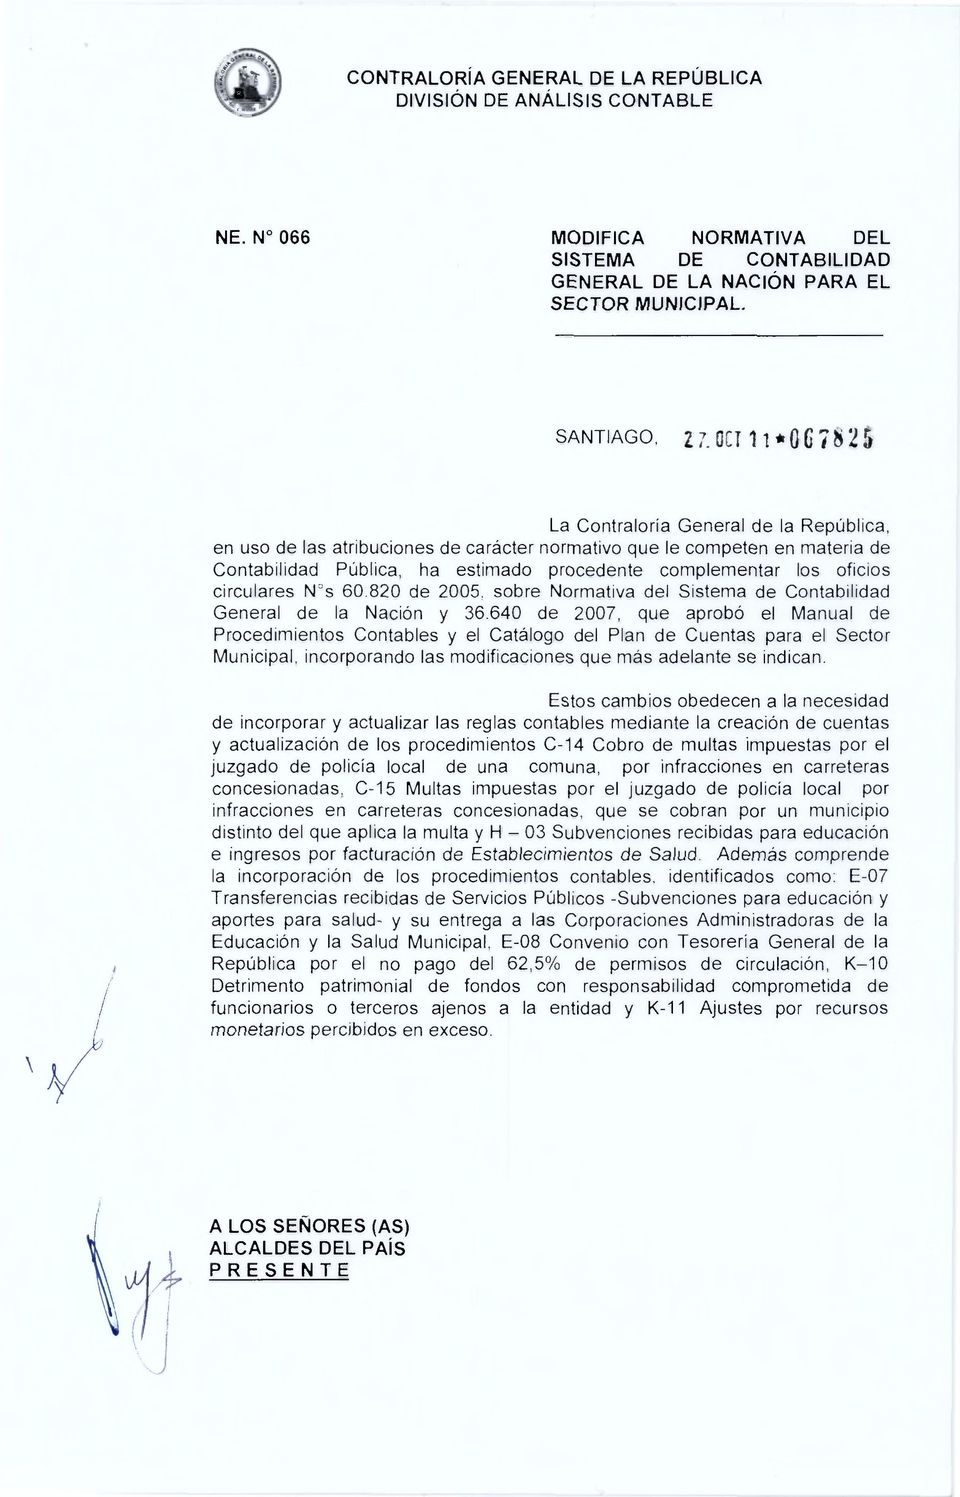 oficios circulares N's 60.820 de 2005, sobre Normativa del Sistema de Contabilidad General de la Nacion y 36.